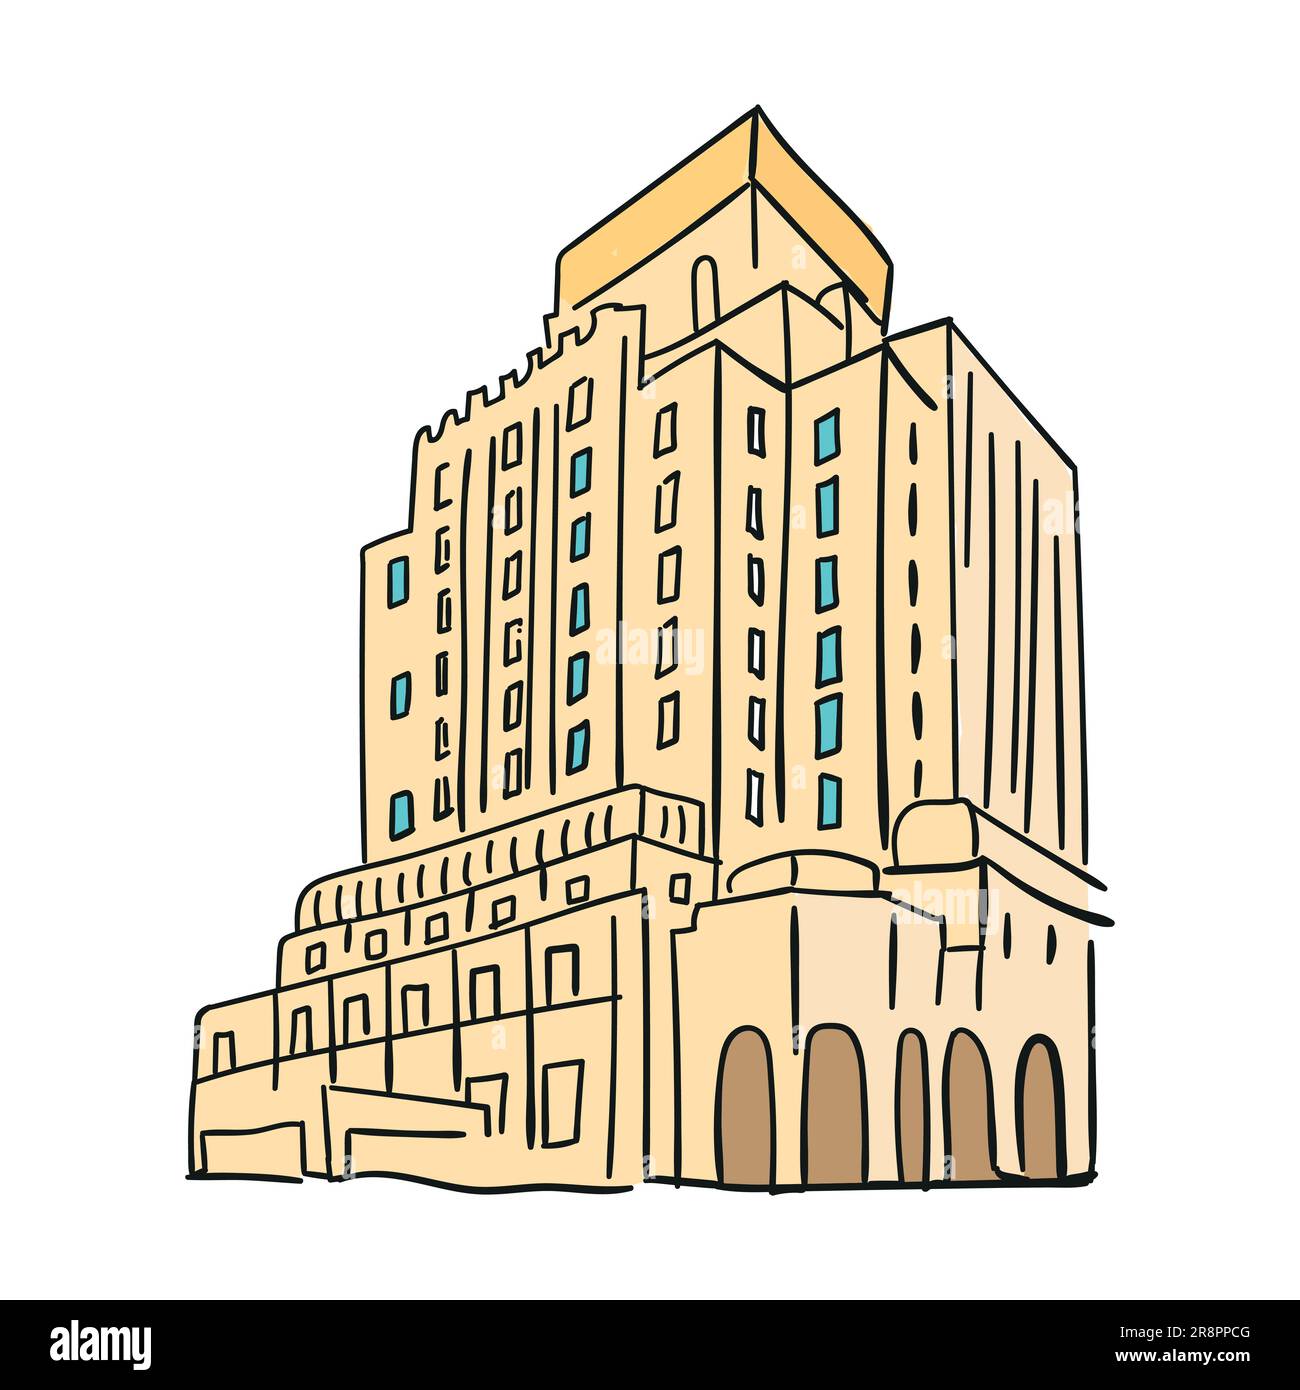 Farbige Doodle handgezeichnete Skizze des modernen hohen Gebäudes mit Fenstern. Schwarzer Umriss. Vektorgrafik isoliert auf weißem Hintergrund Stock Vektor